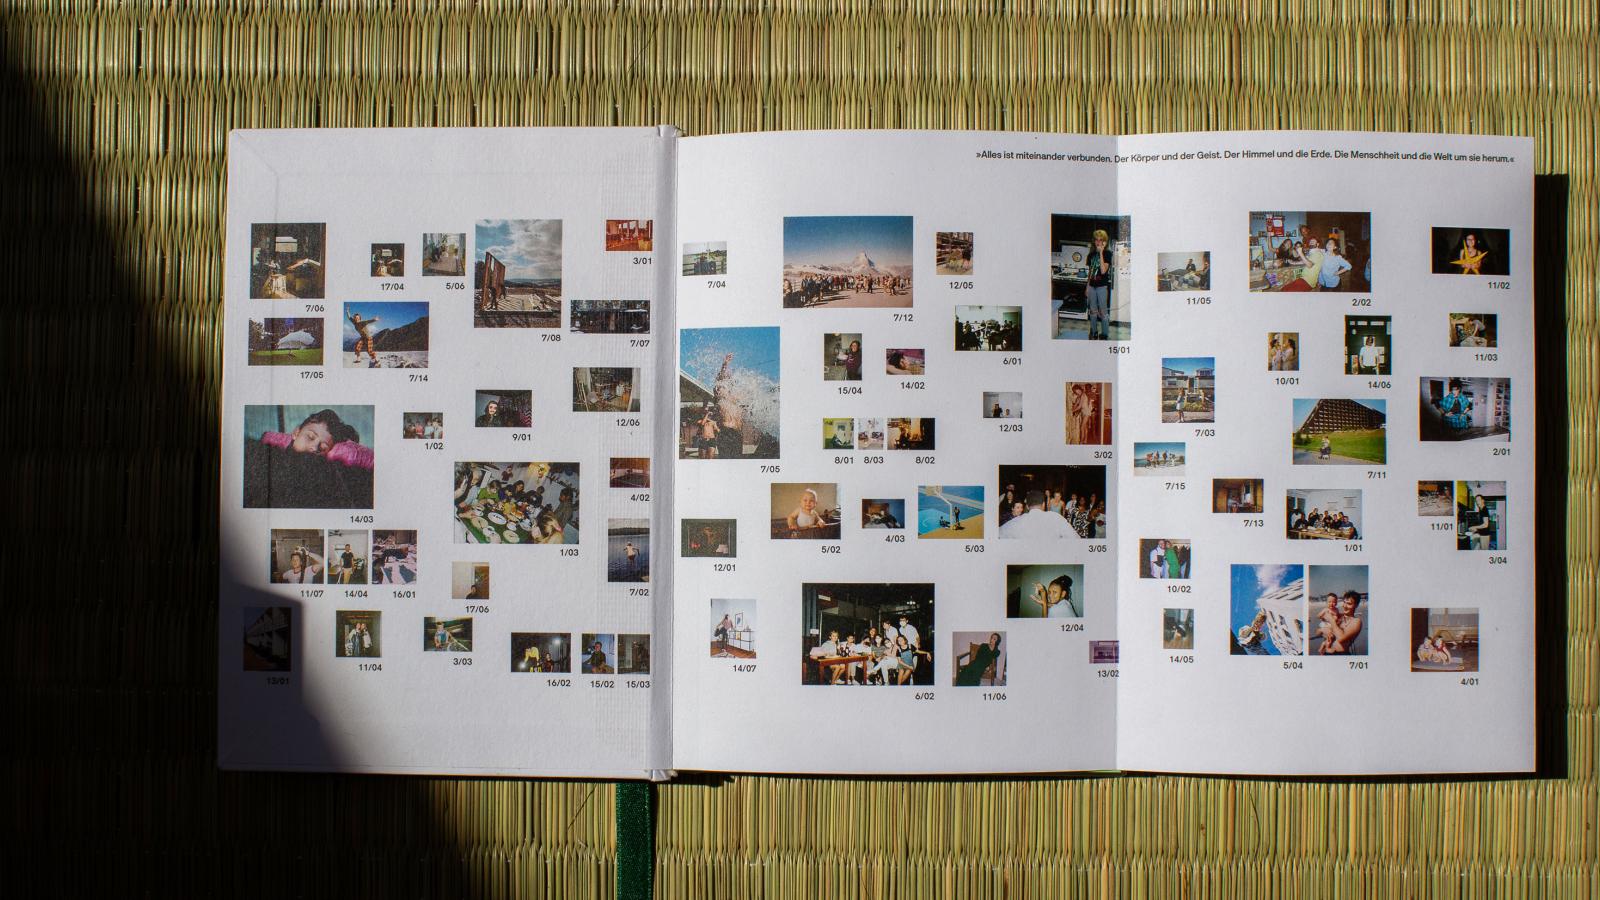 Das Bild zeigt die Umschlagseite vorn mit vielen kleinen Bildern der Publikation CHARLOTTE FOREVER - Durch die Spuren von Charlotte Perriand